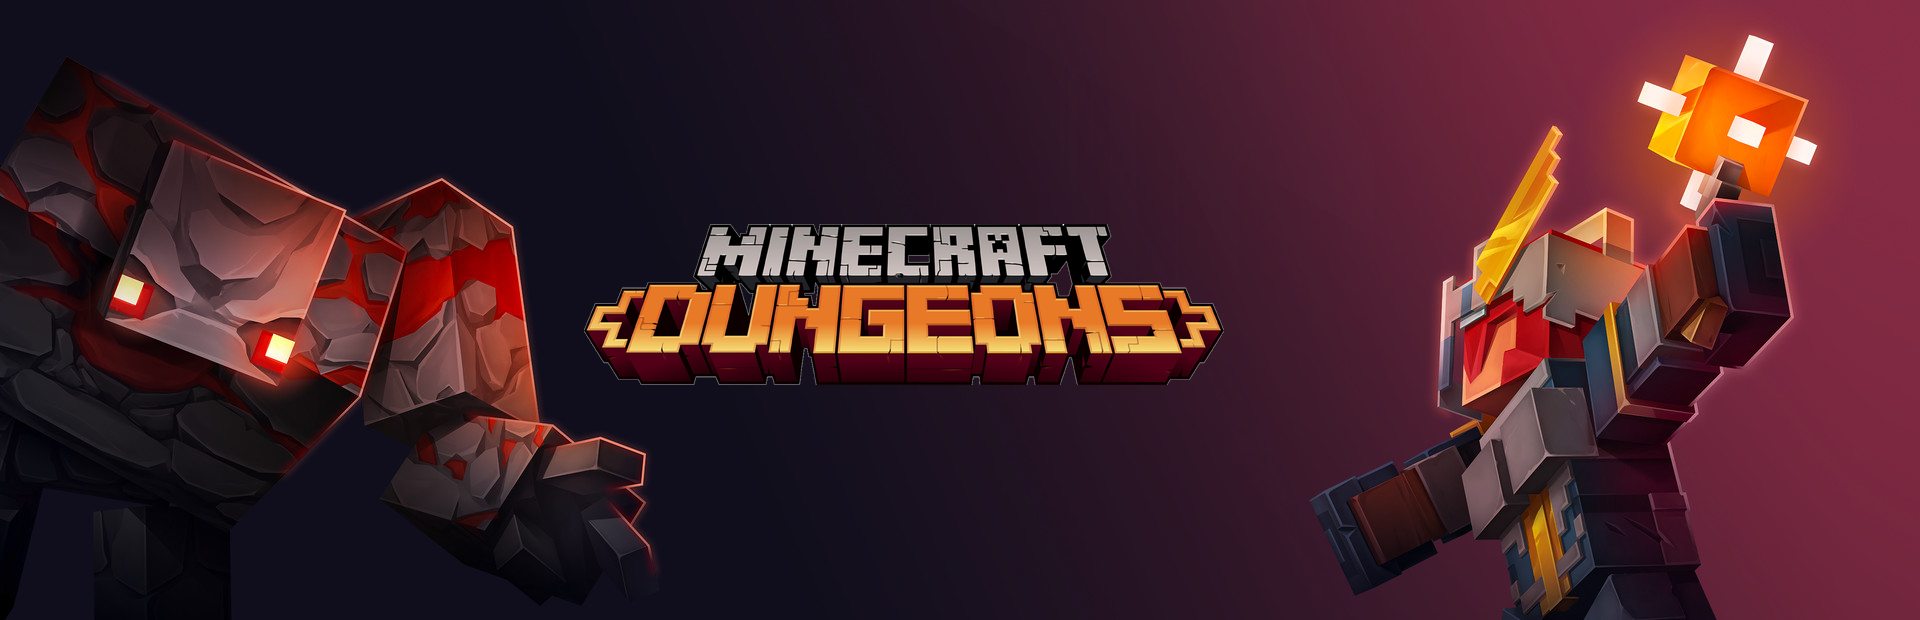 دانلود بازی Minecraft Dungeons برای پی سی | گیمباتو